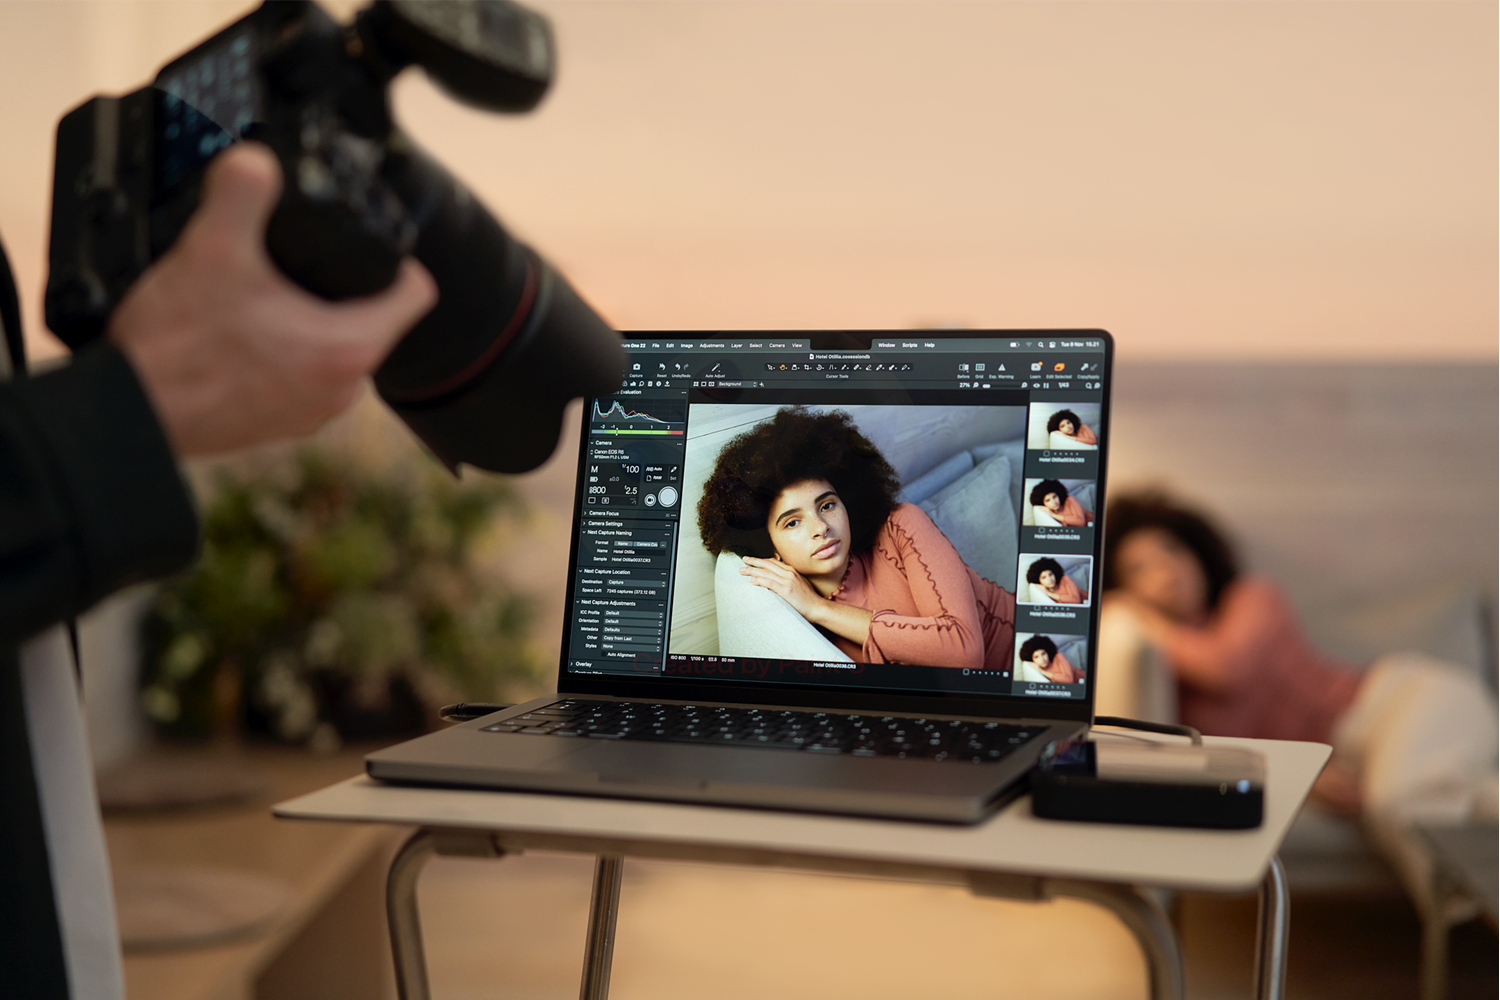 Immagini di donne visualizzate sul laptop in background tramite tethering.